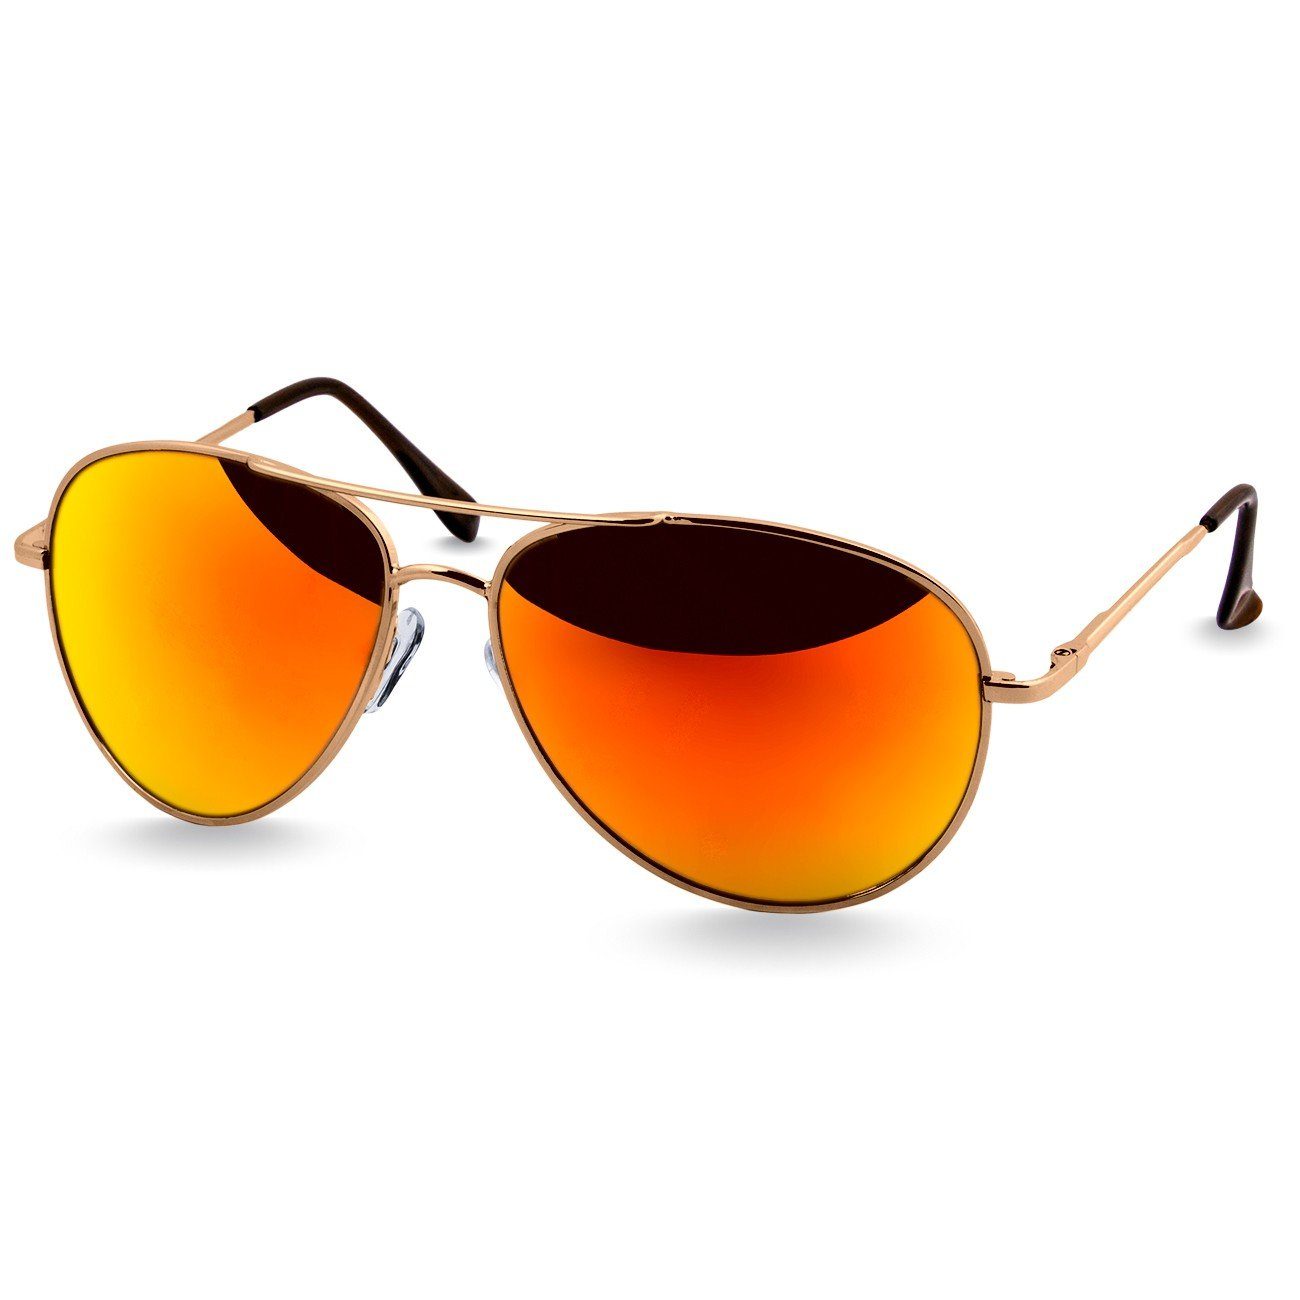 Caspar verspiegelt / Retro klassische Unisex Sonnenbrille SG013 Pilotenbrille lila gold